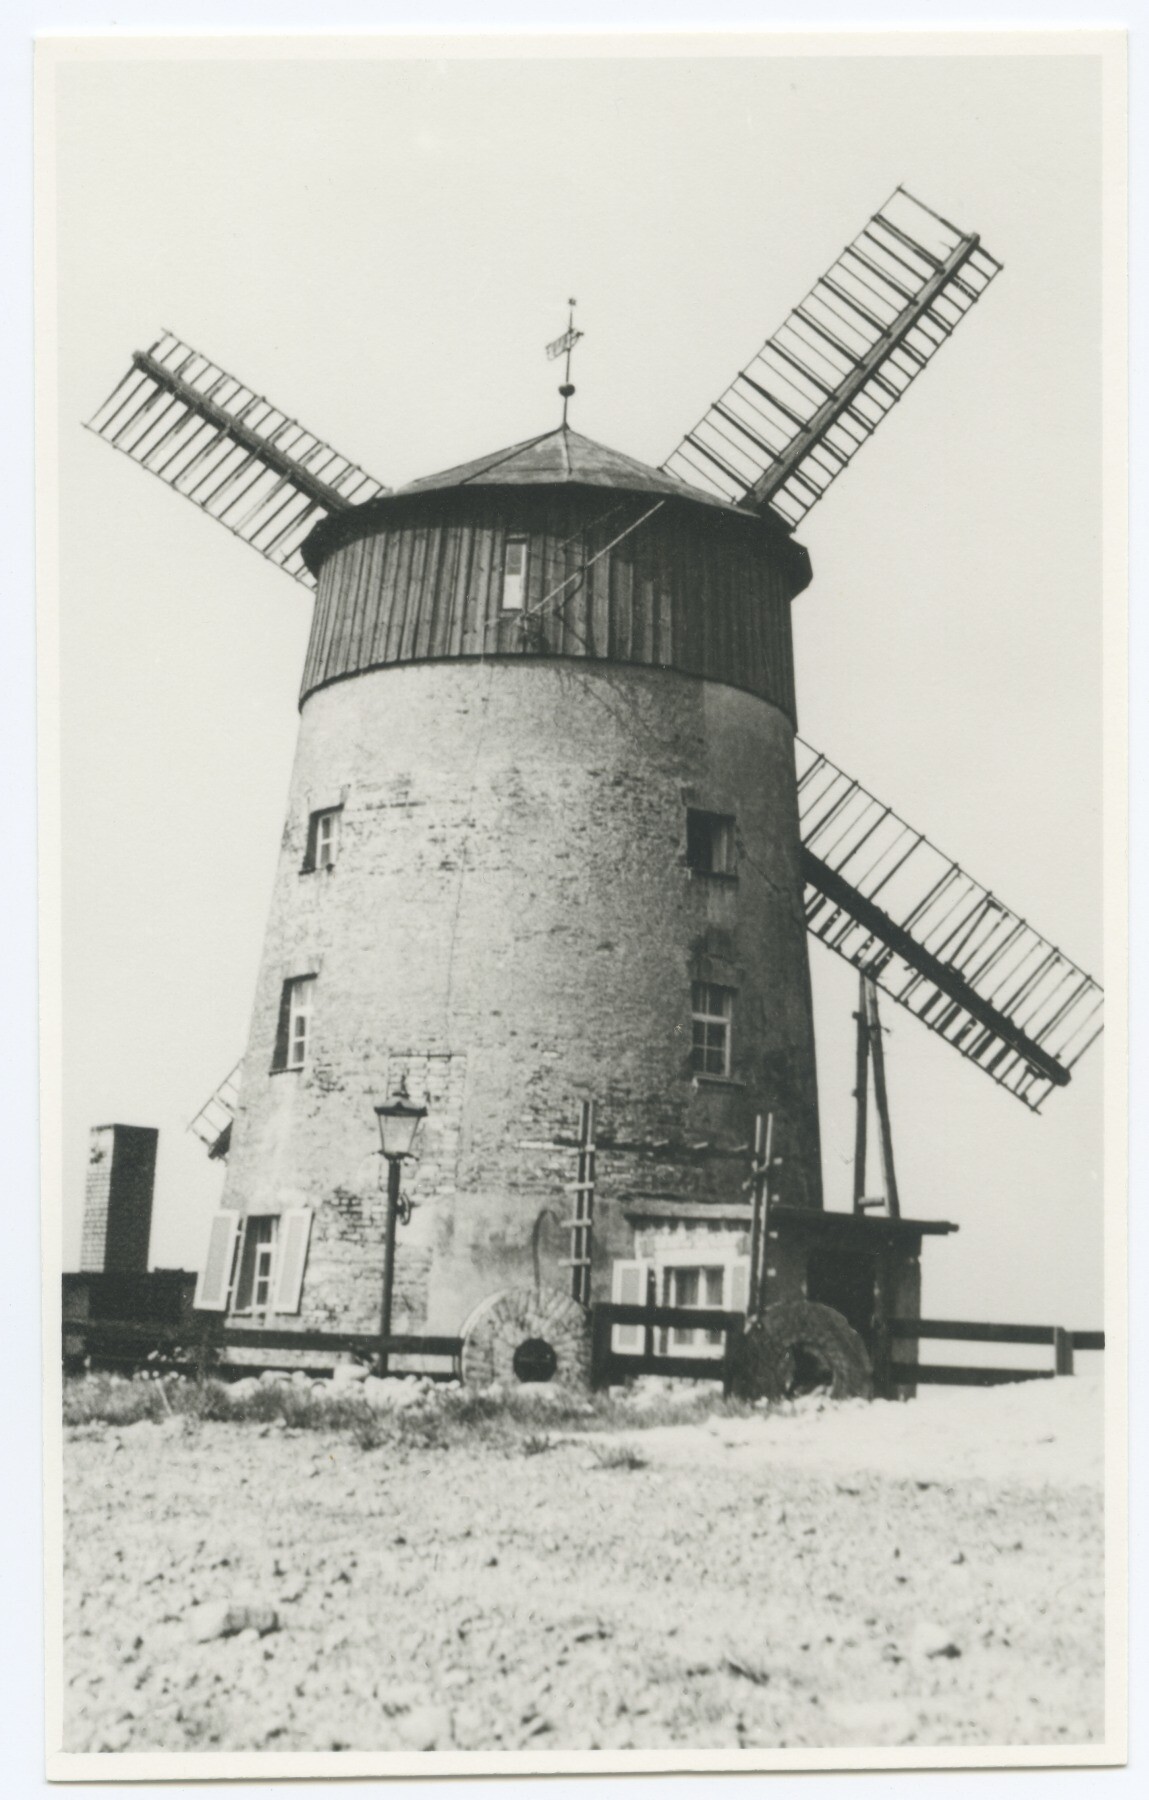 Turmholländerwindmühle Püchau/Wurzen (Historische Mühle von Sanssouci CC BY-NC-ND)